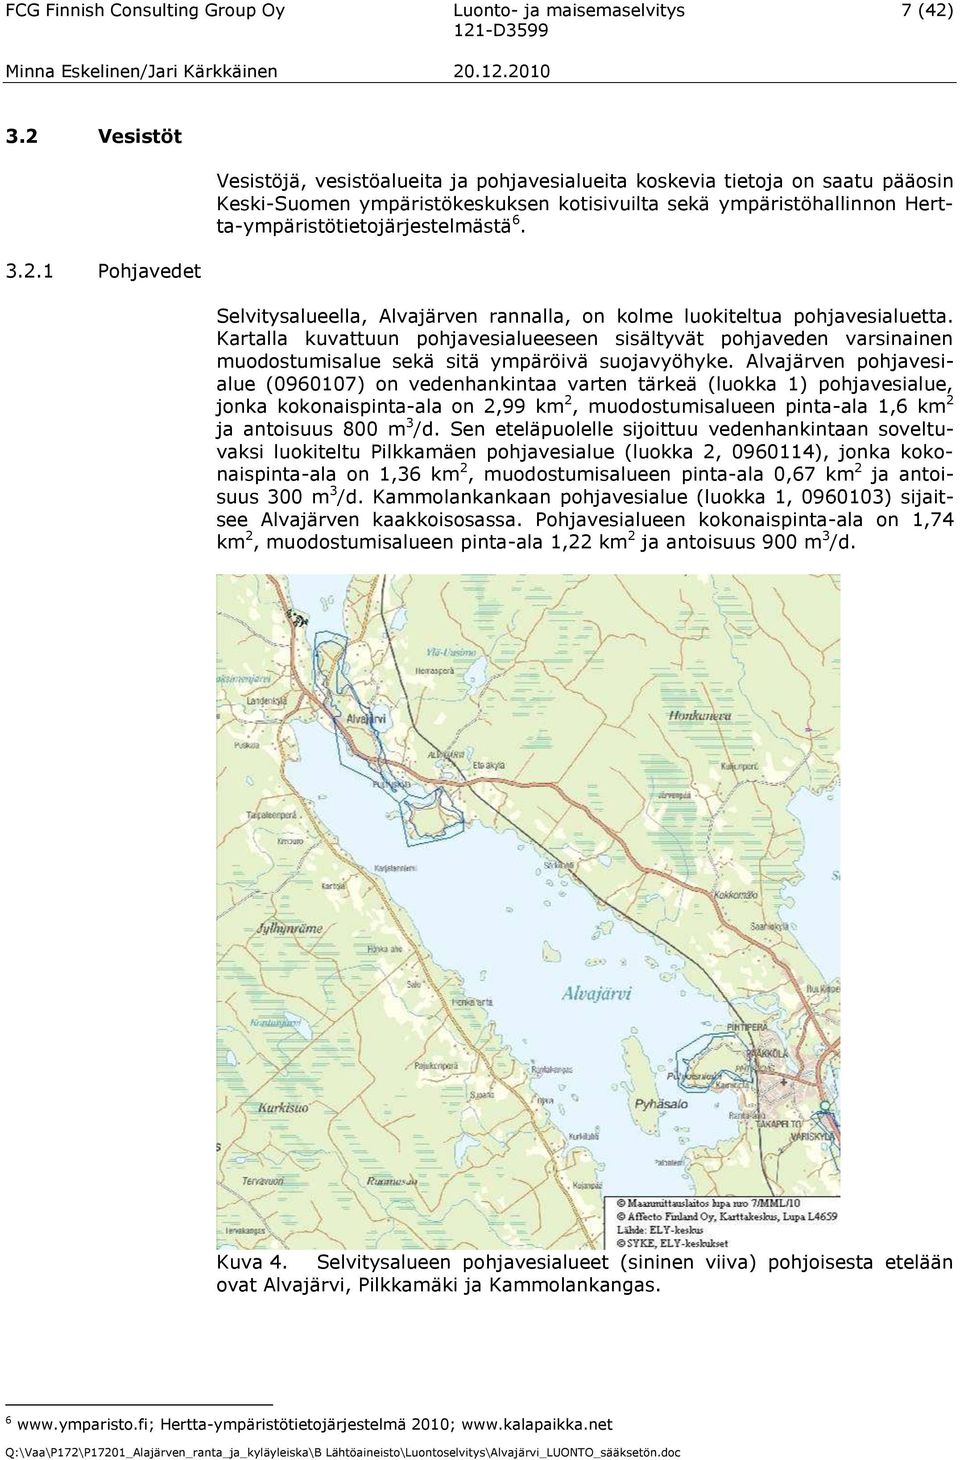 Herttaympäristötietojärjestelmästä 6. Selvitysalueella, Alvajärven rannalla, on kolme luokiteltua pohjavesialuetta.